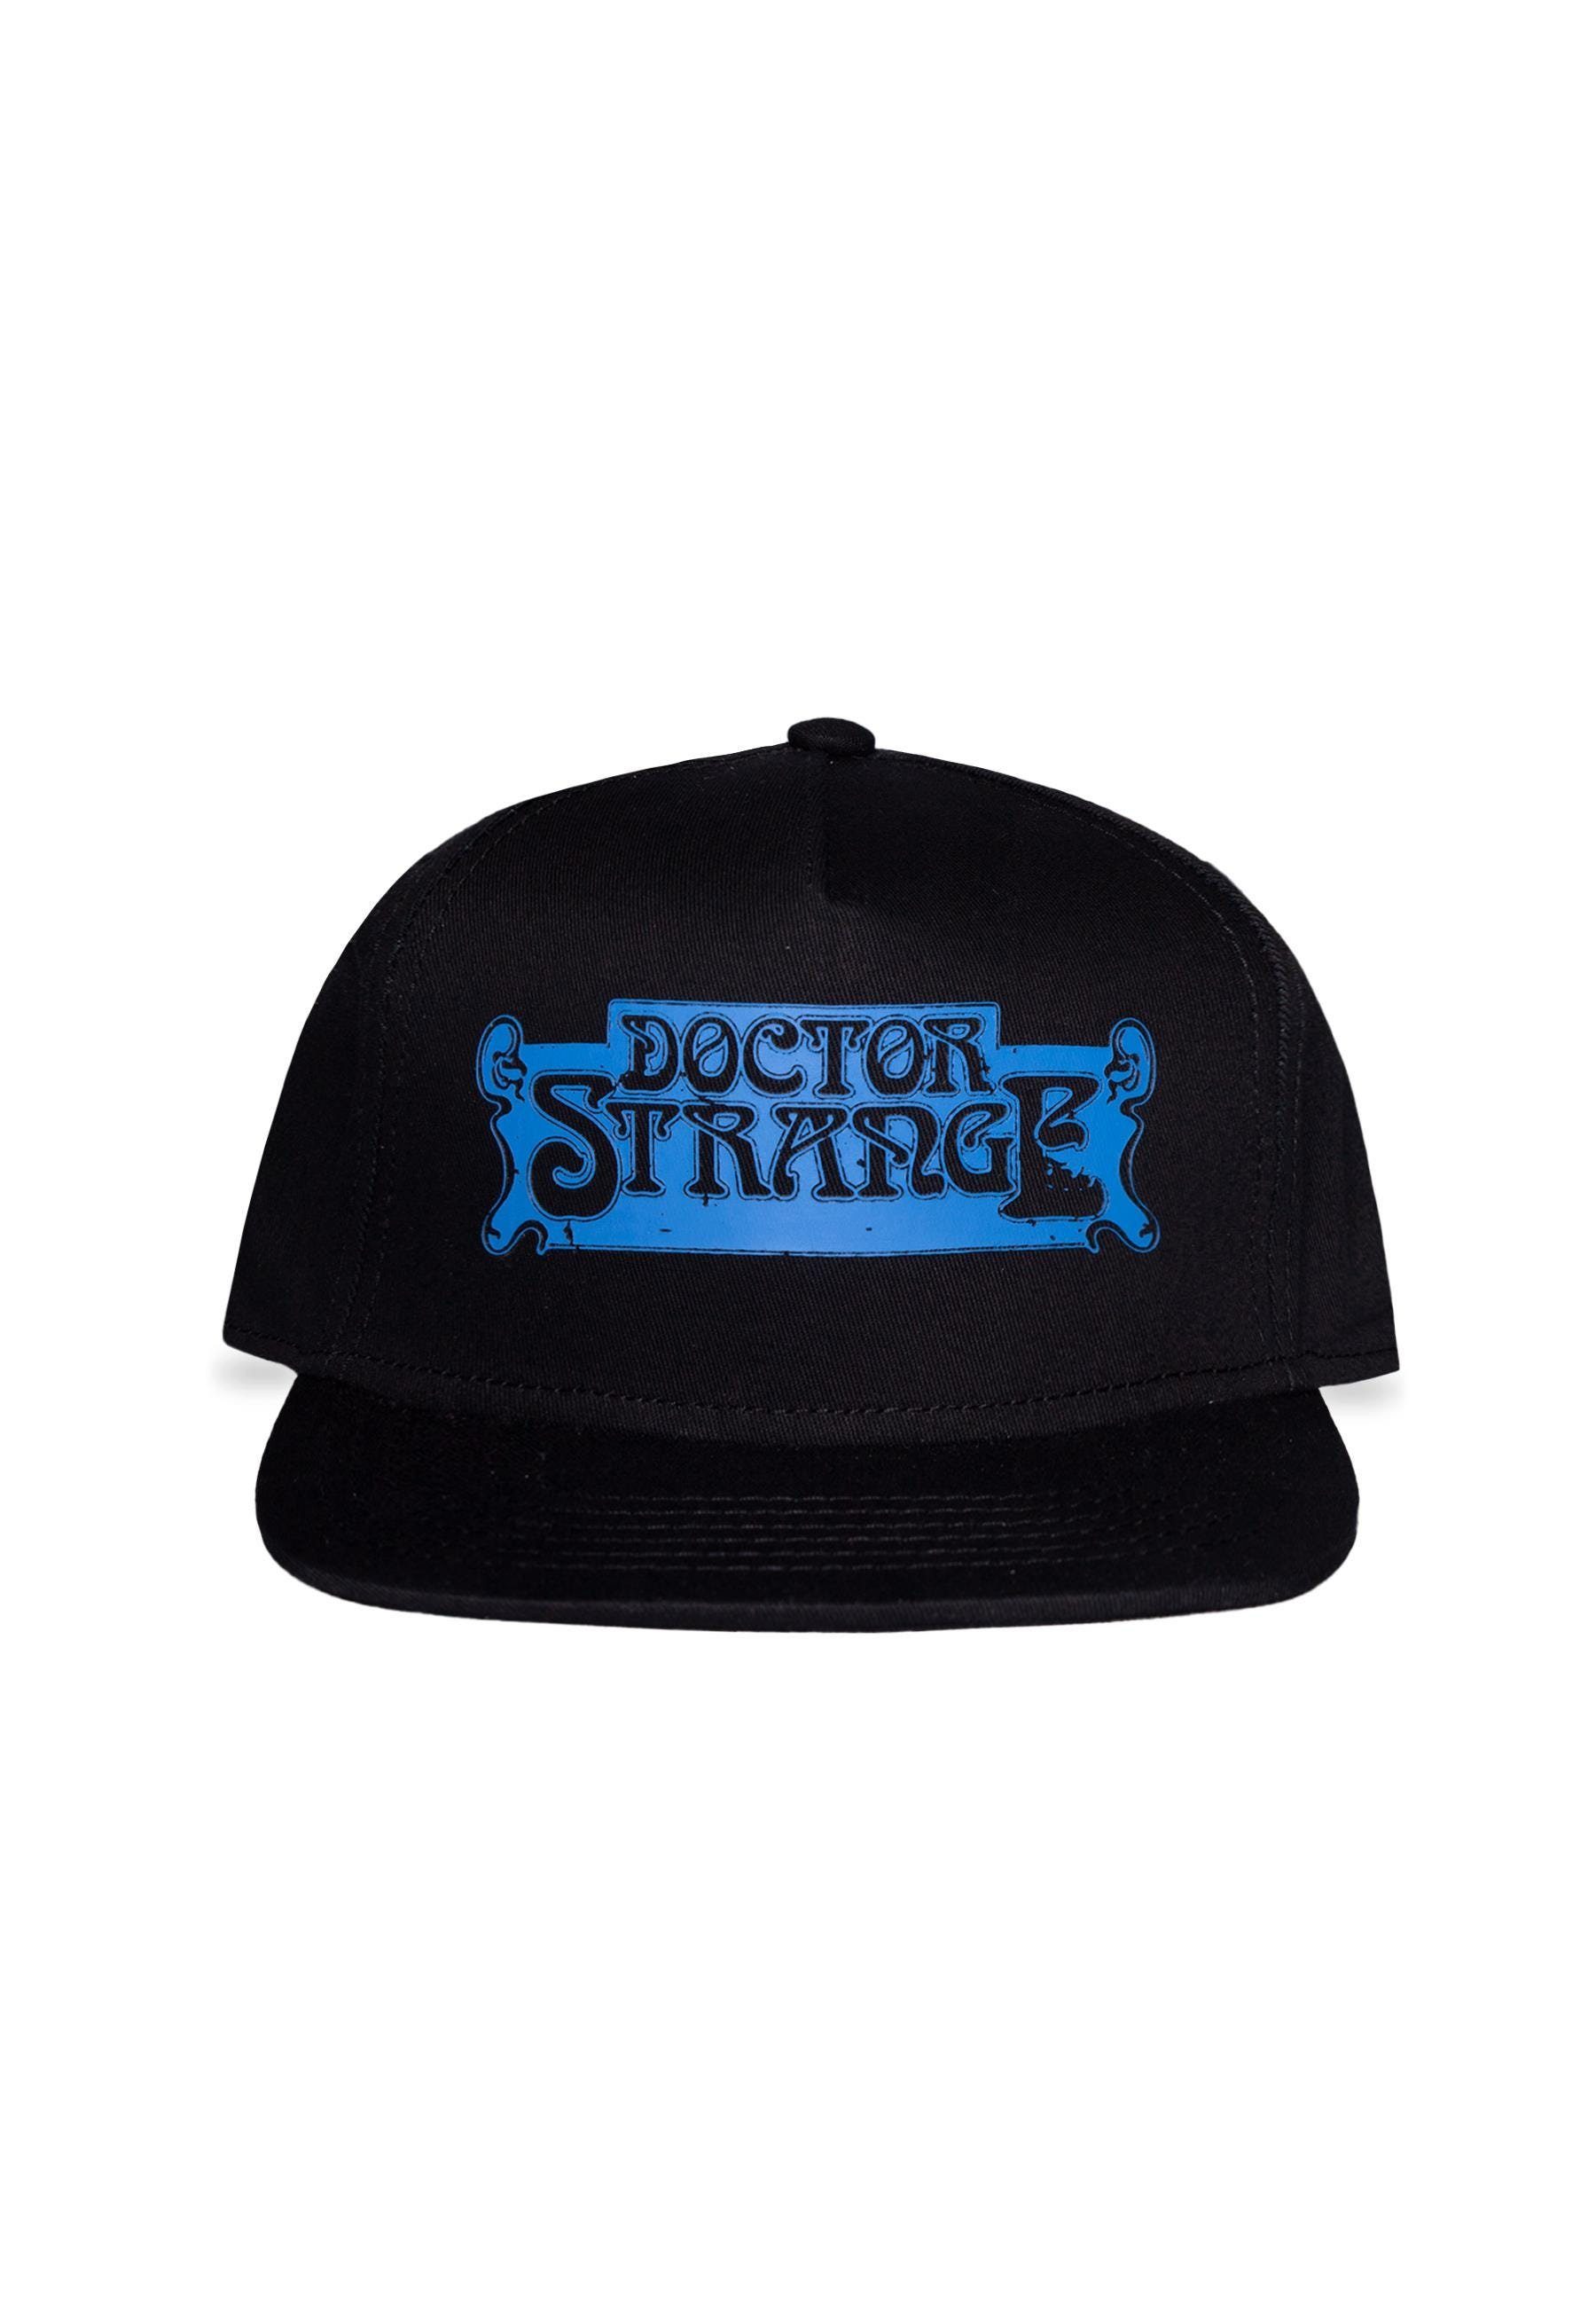 Doctor Strange Snapback Cap | Snapback Caps